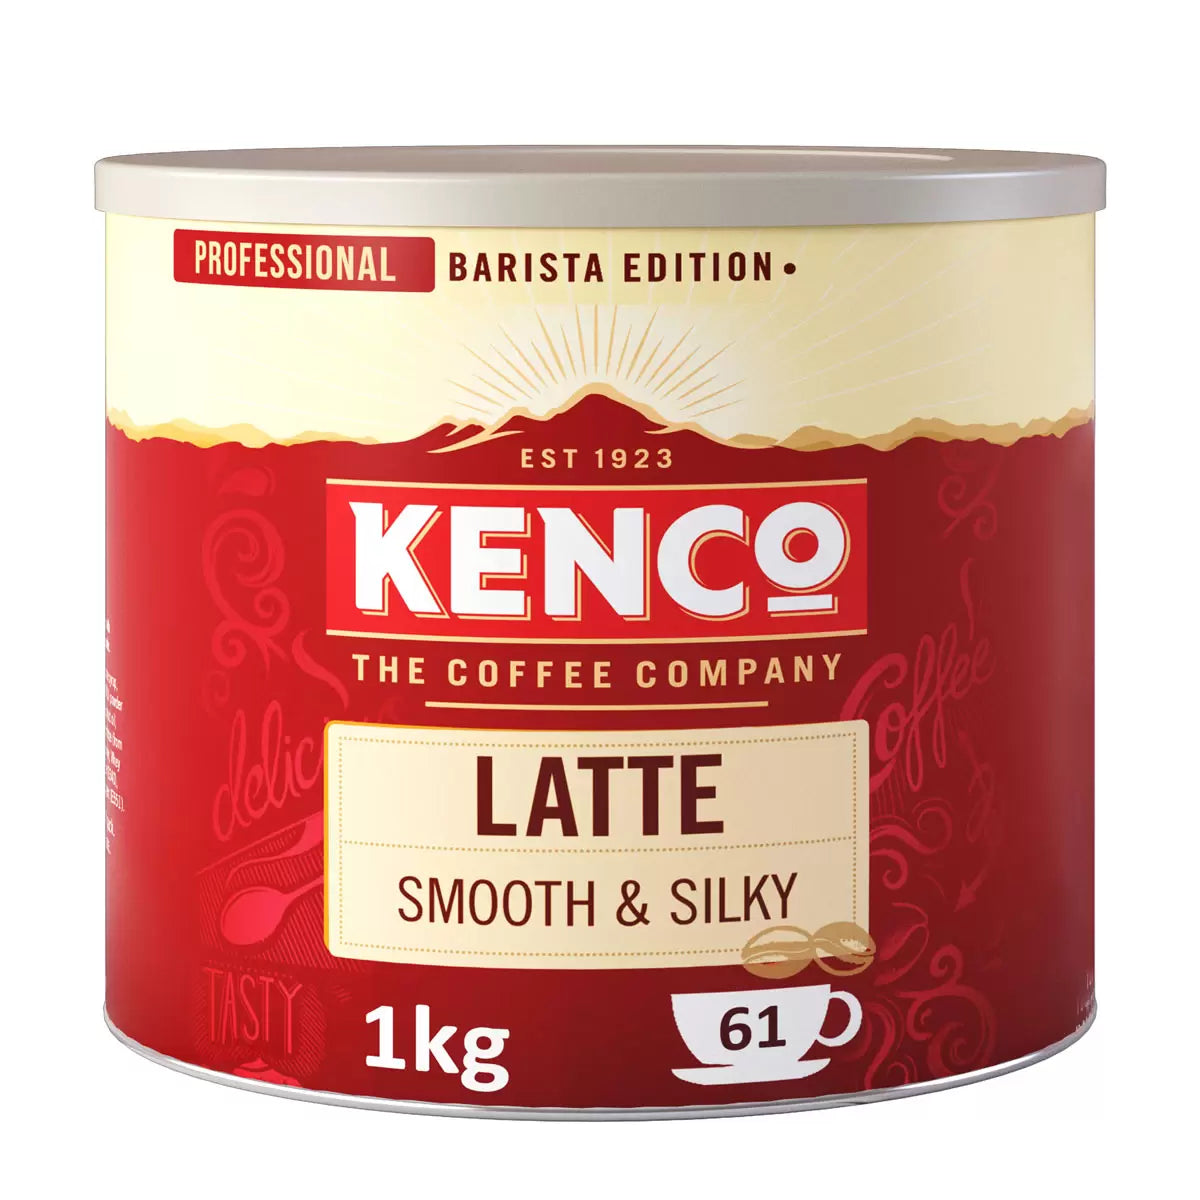 Kenco Latte Coffee - 1kg